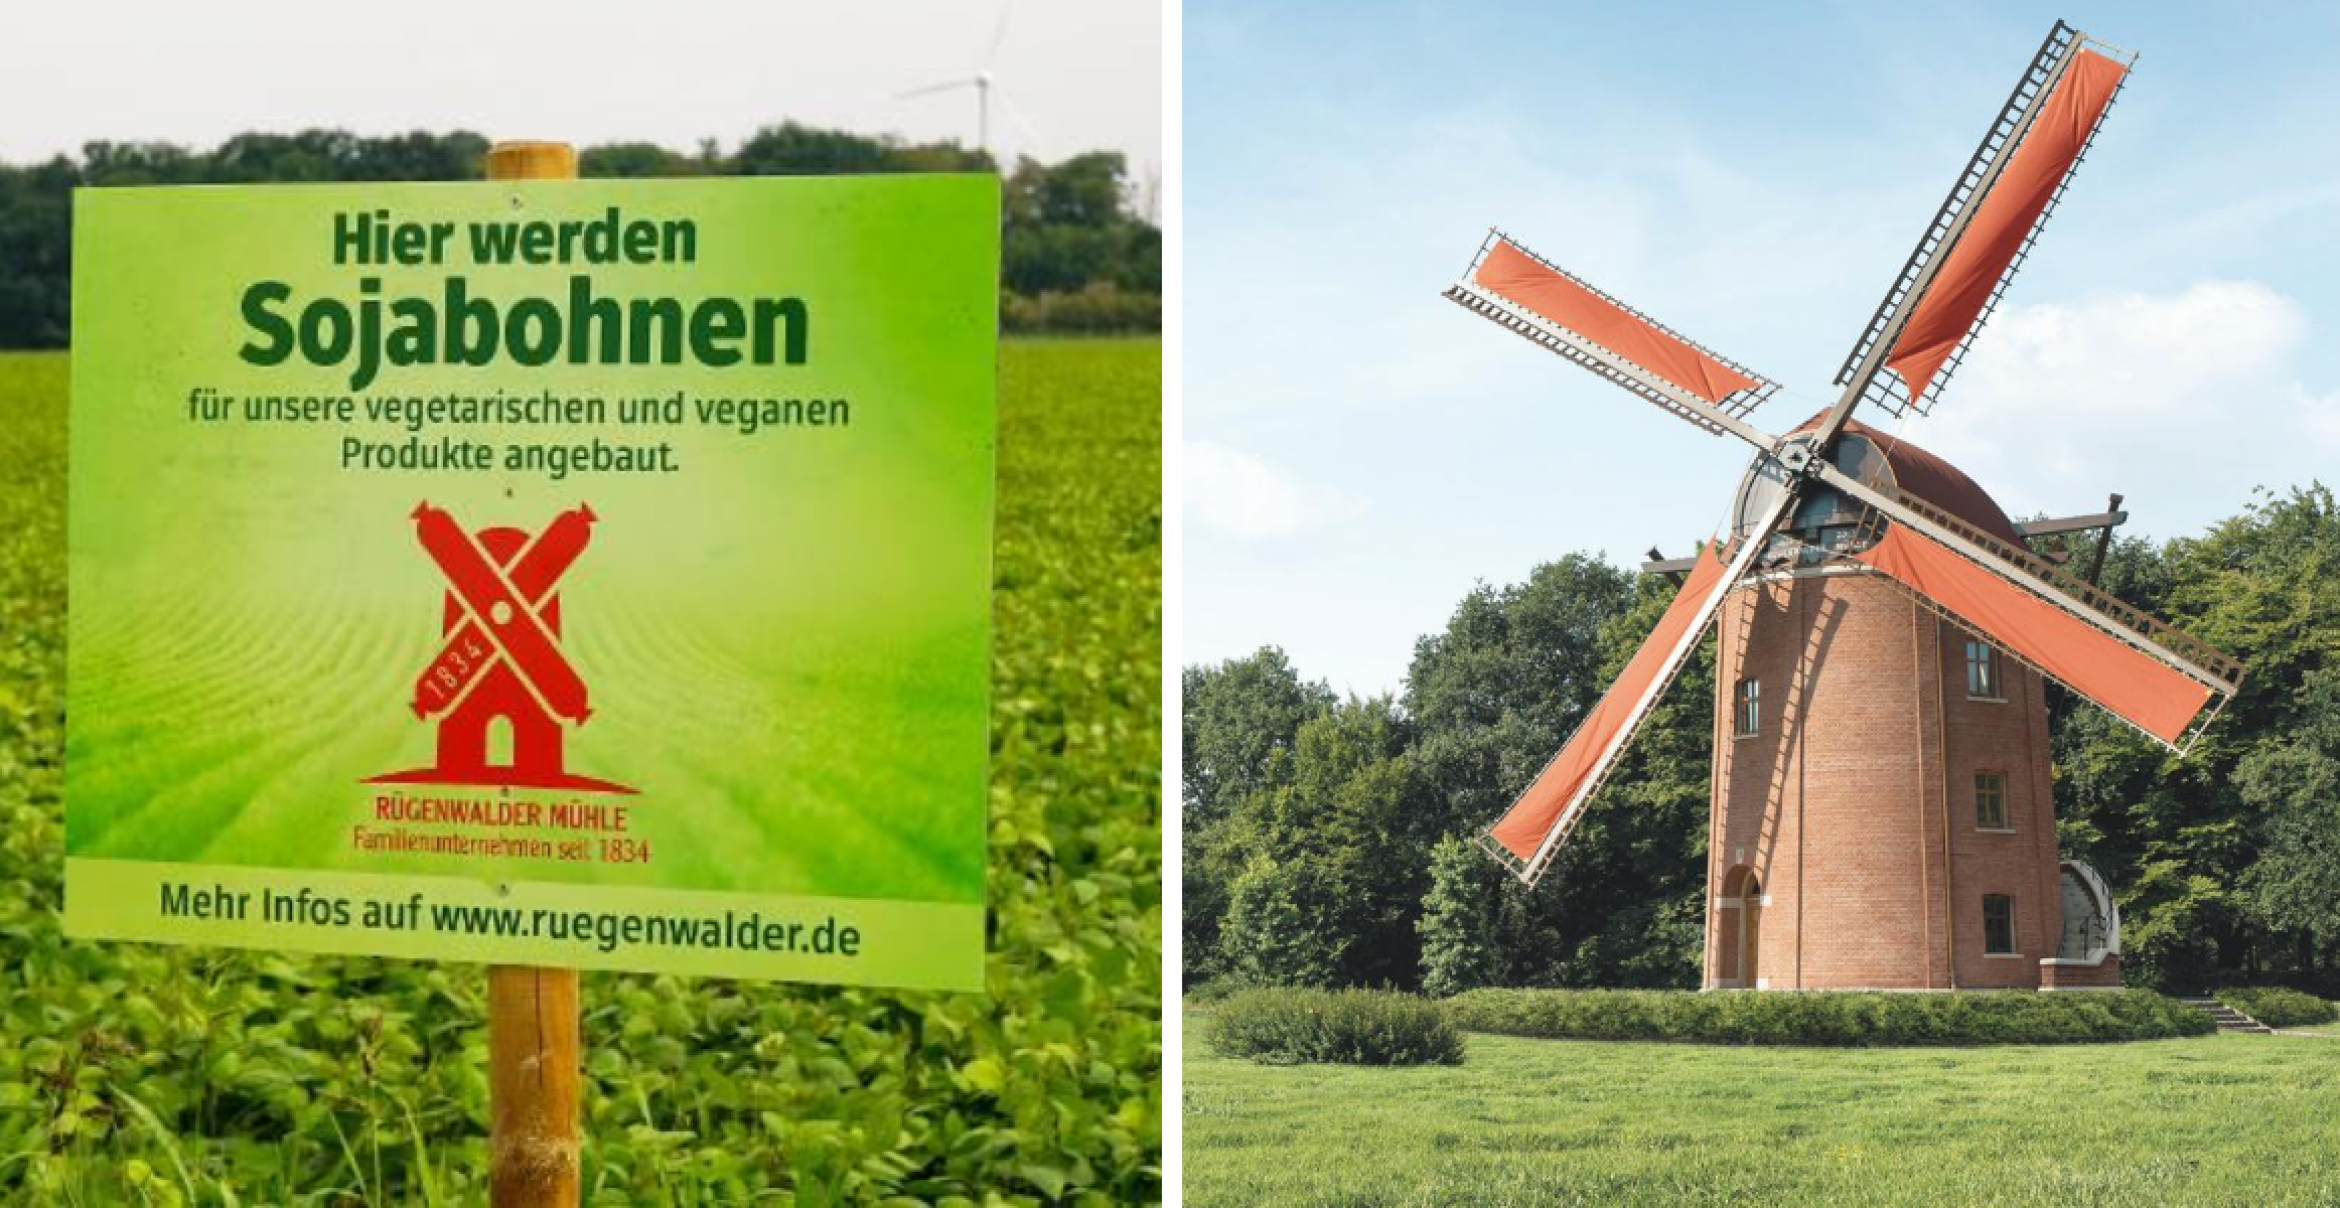 Wurstunternehmen Rügenwalder Mühle verkauft erstmals mehr Veggie-Fleisch als Fleisch-Fleisch